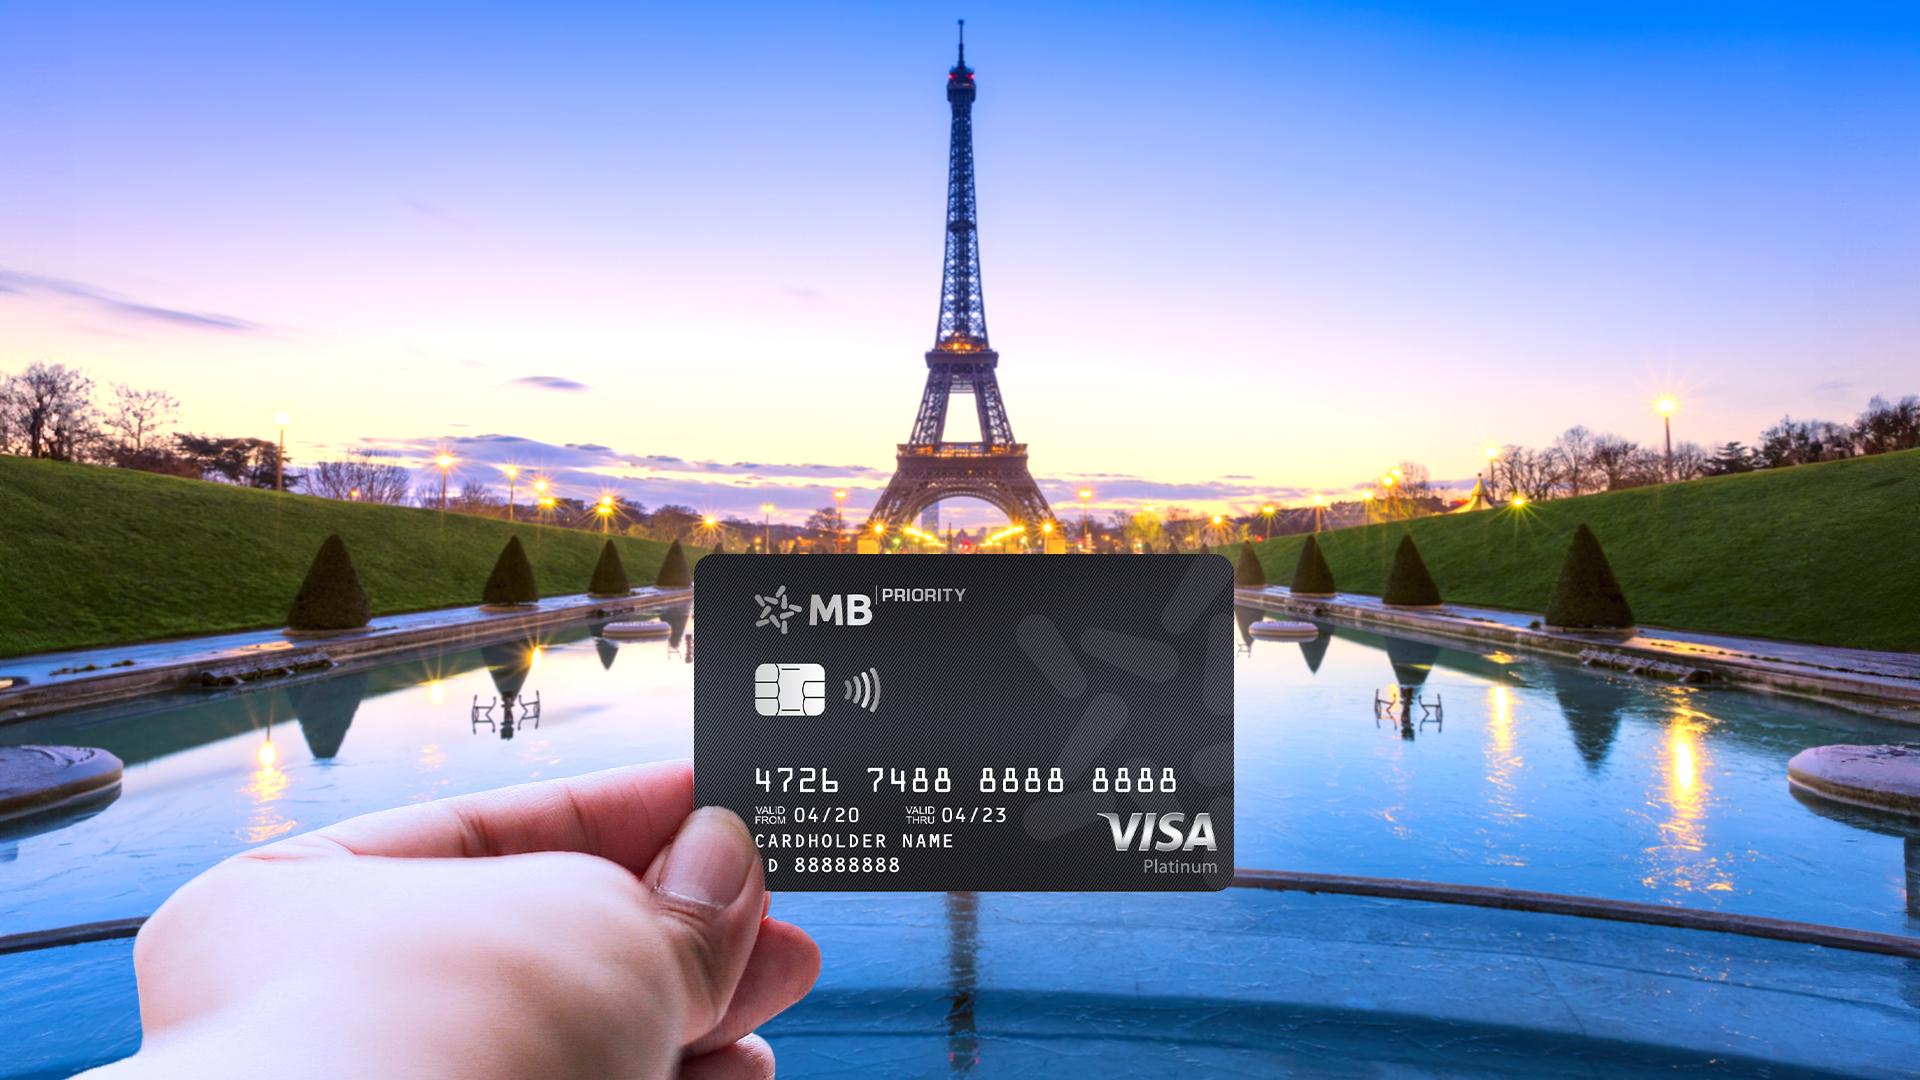 Chủ thẻ MB Visa đầu tiên nhận chuyến đi Pháp xem Olympic Paris 2024- Ảnh 1.